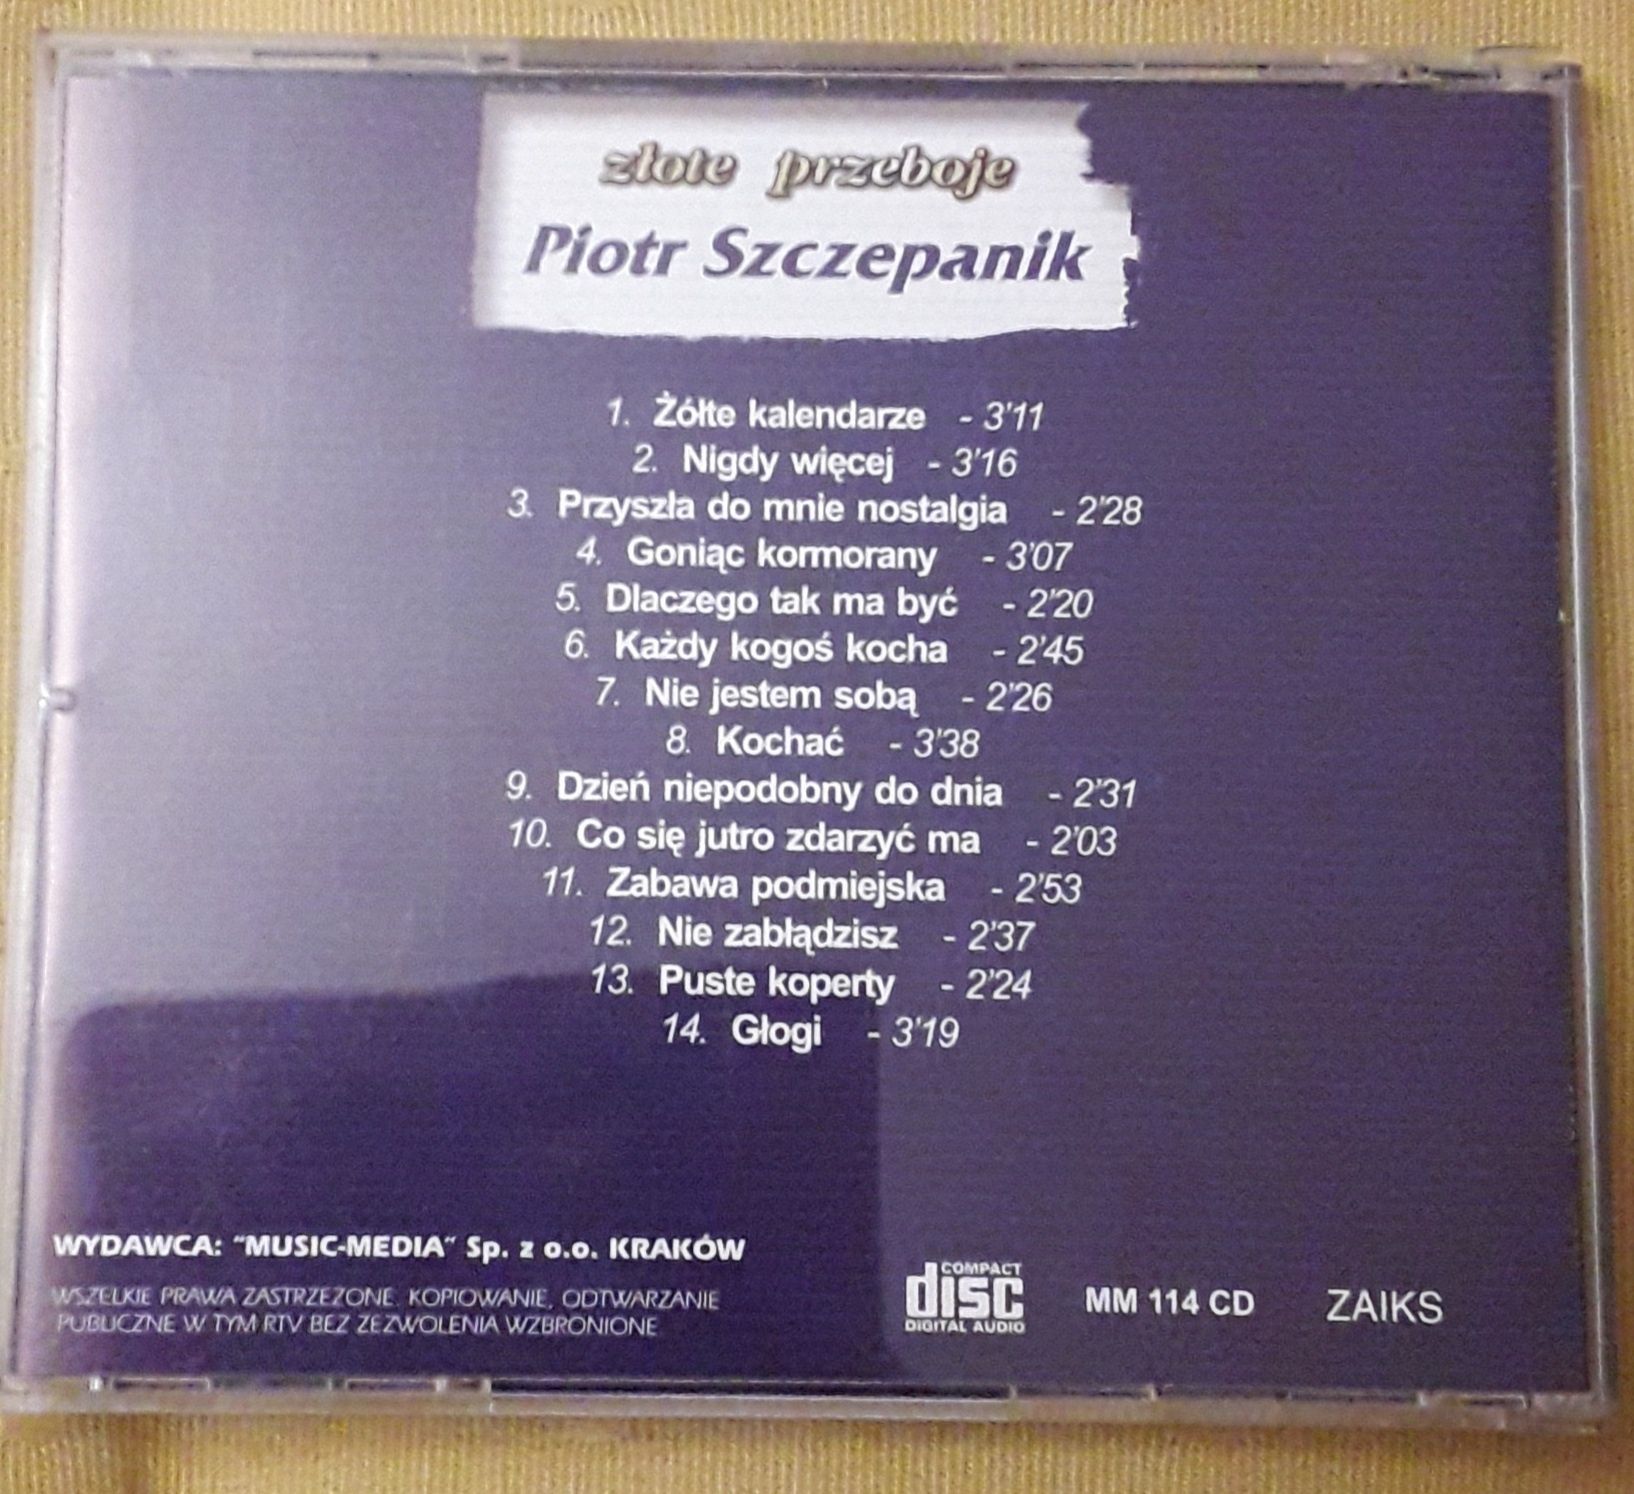 Piotr Szczepanik - Złote przeboje - płyta CD